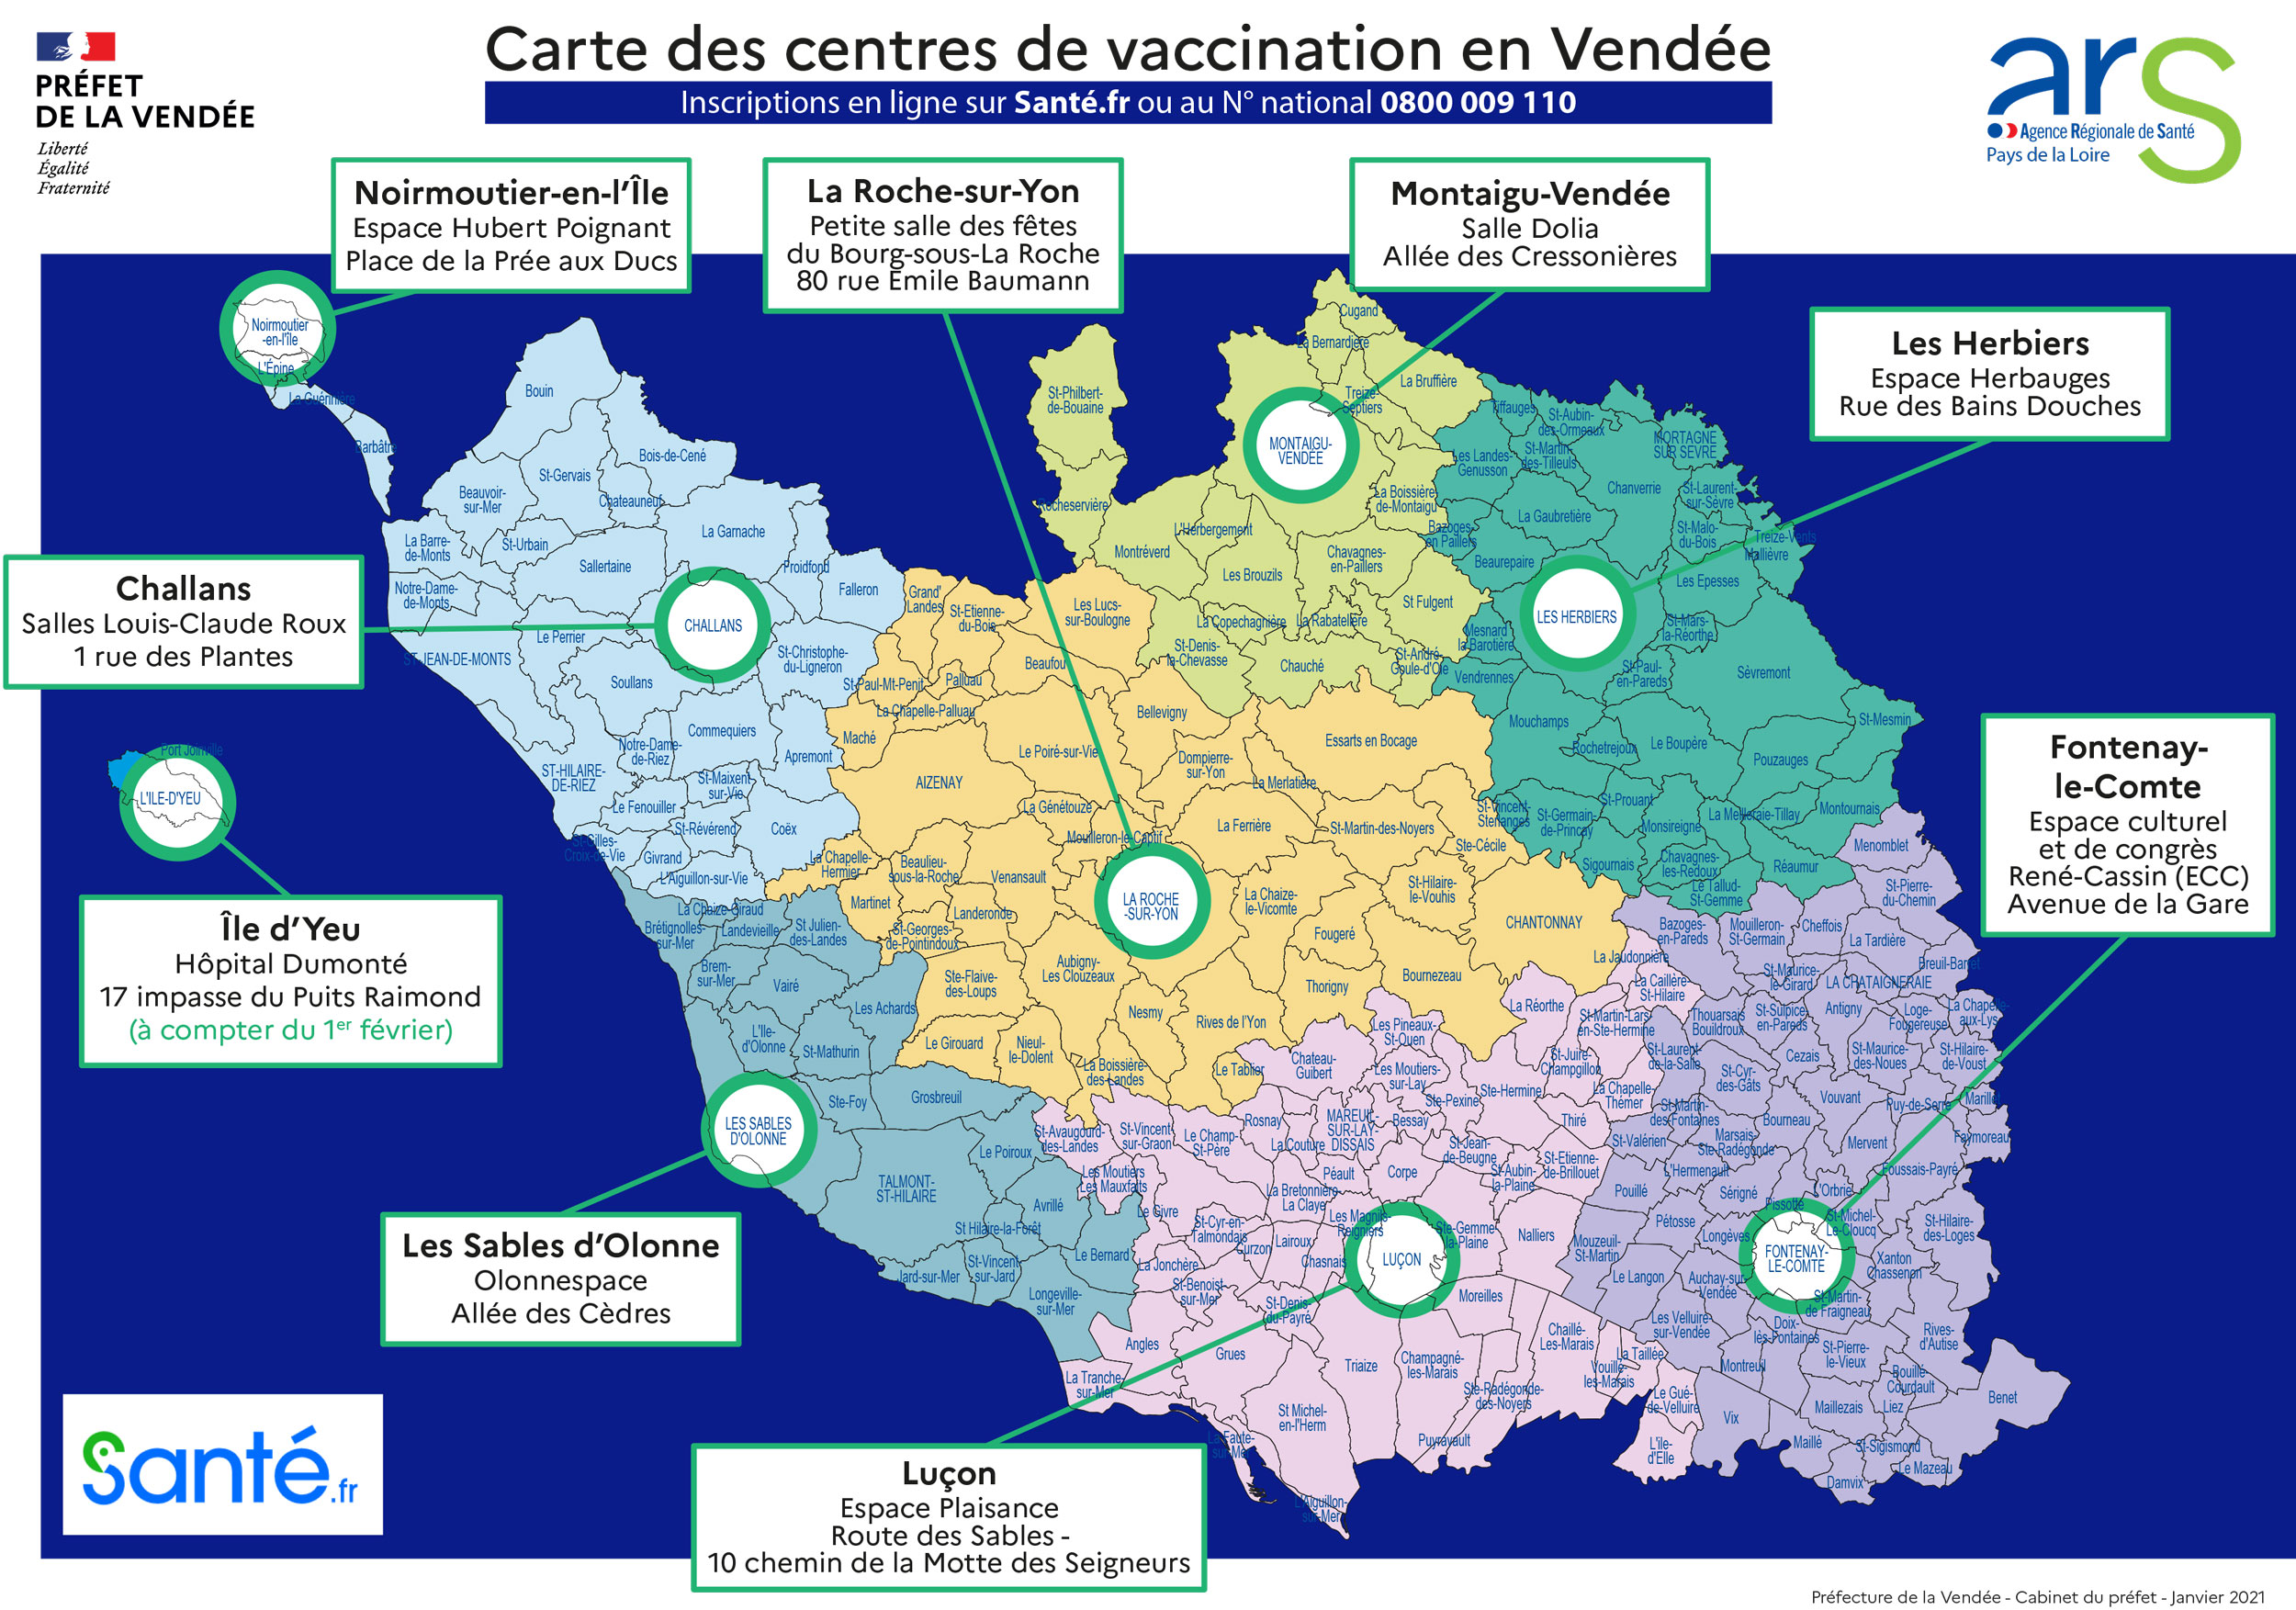 Vendée 1 Vaccine Center Card